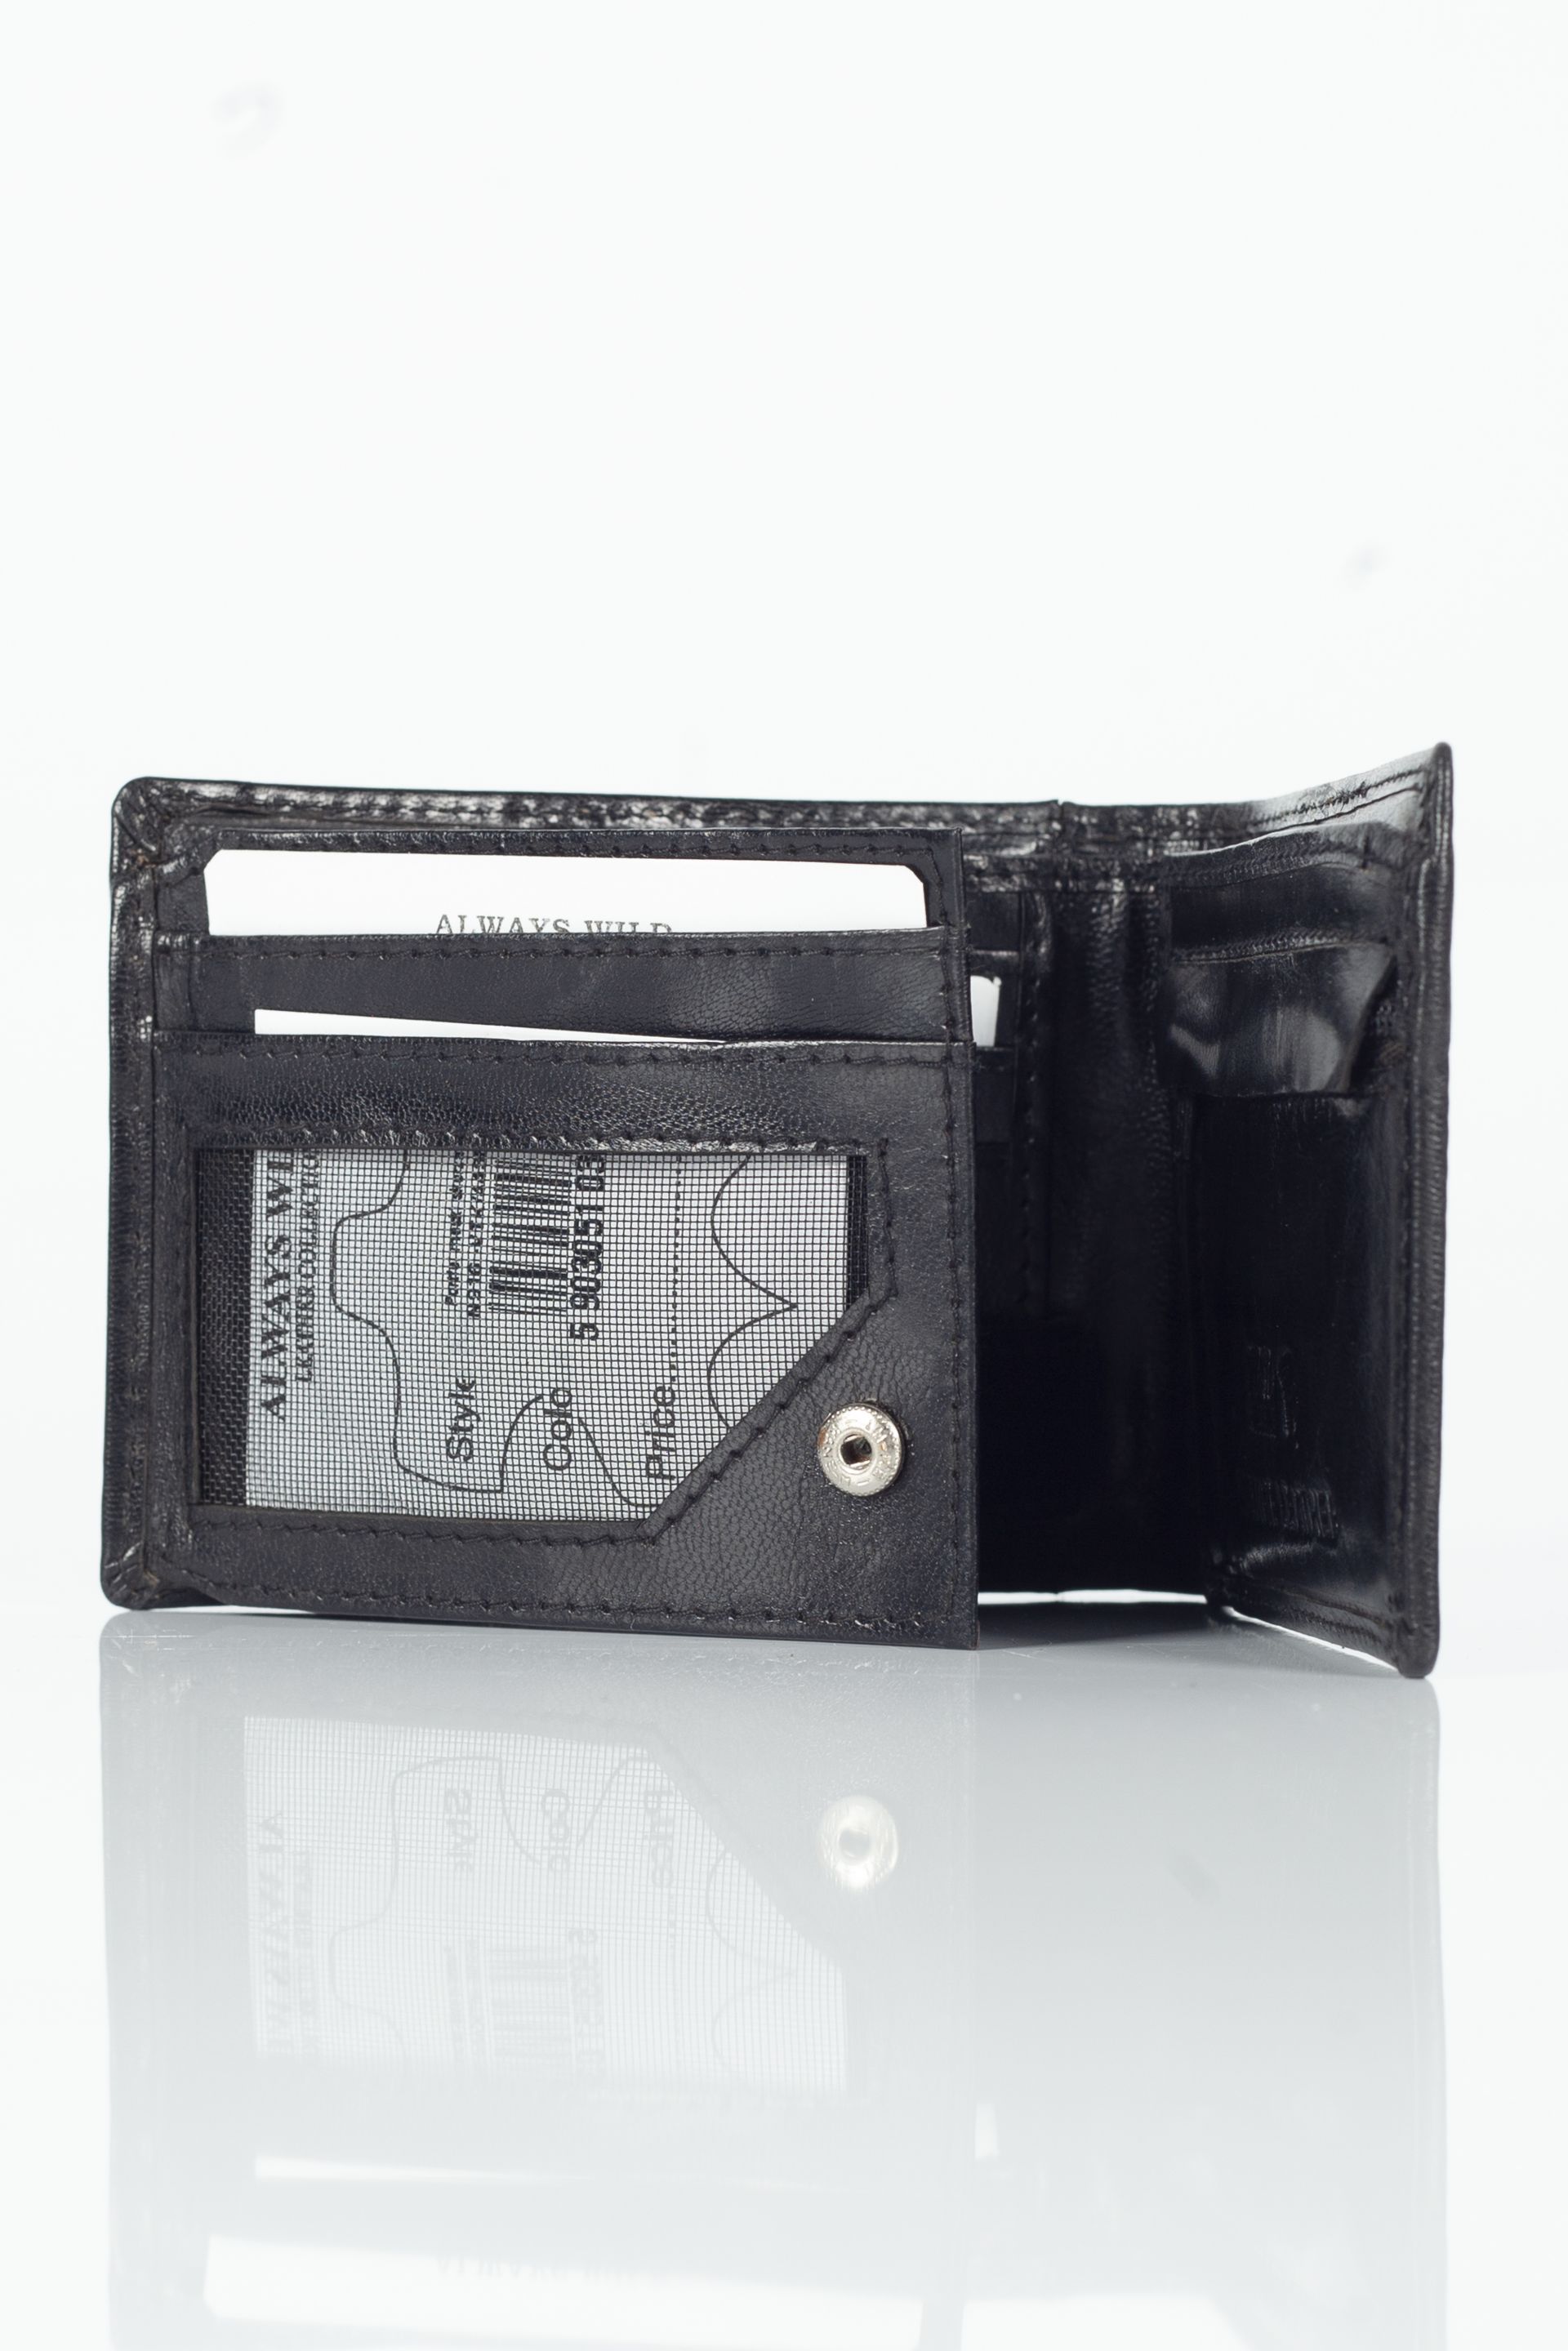 Geldbörse  WILD N916-VTK-BOX-4435-BLACK